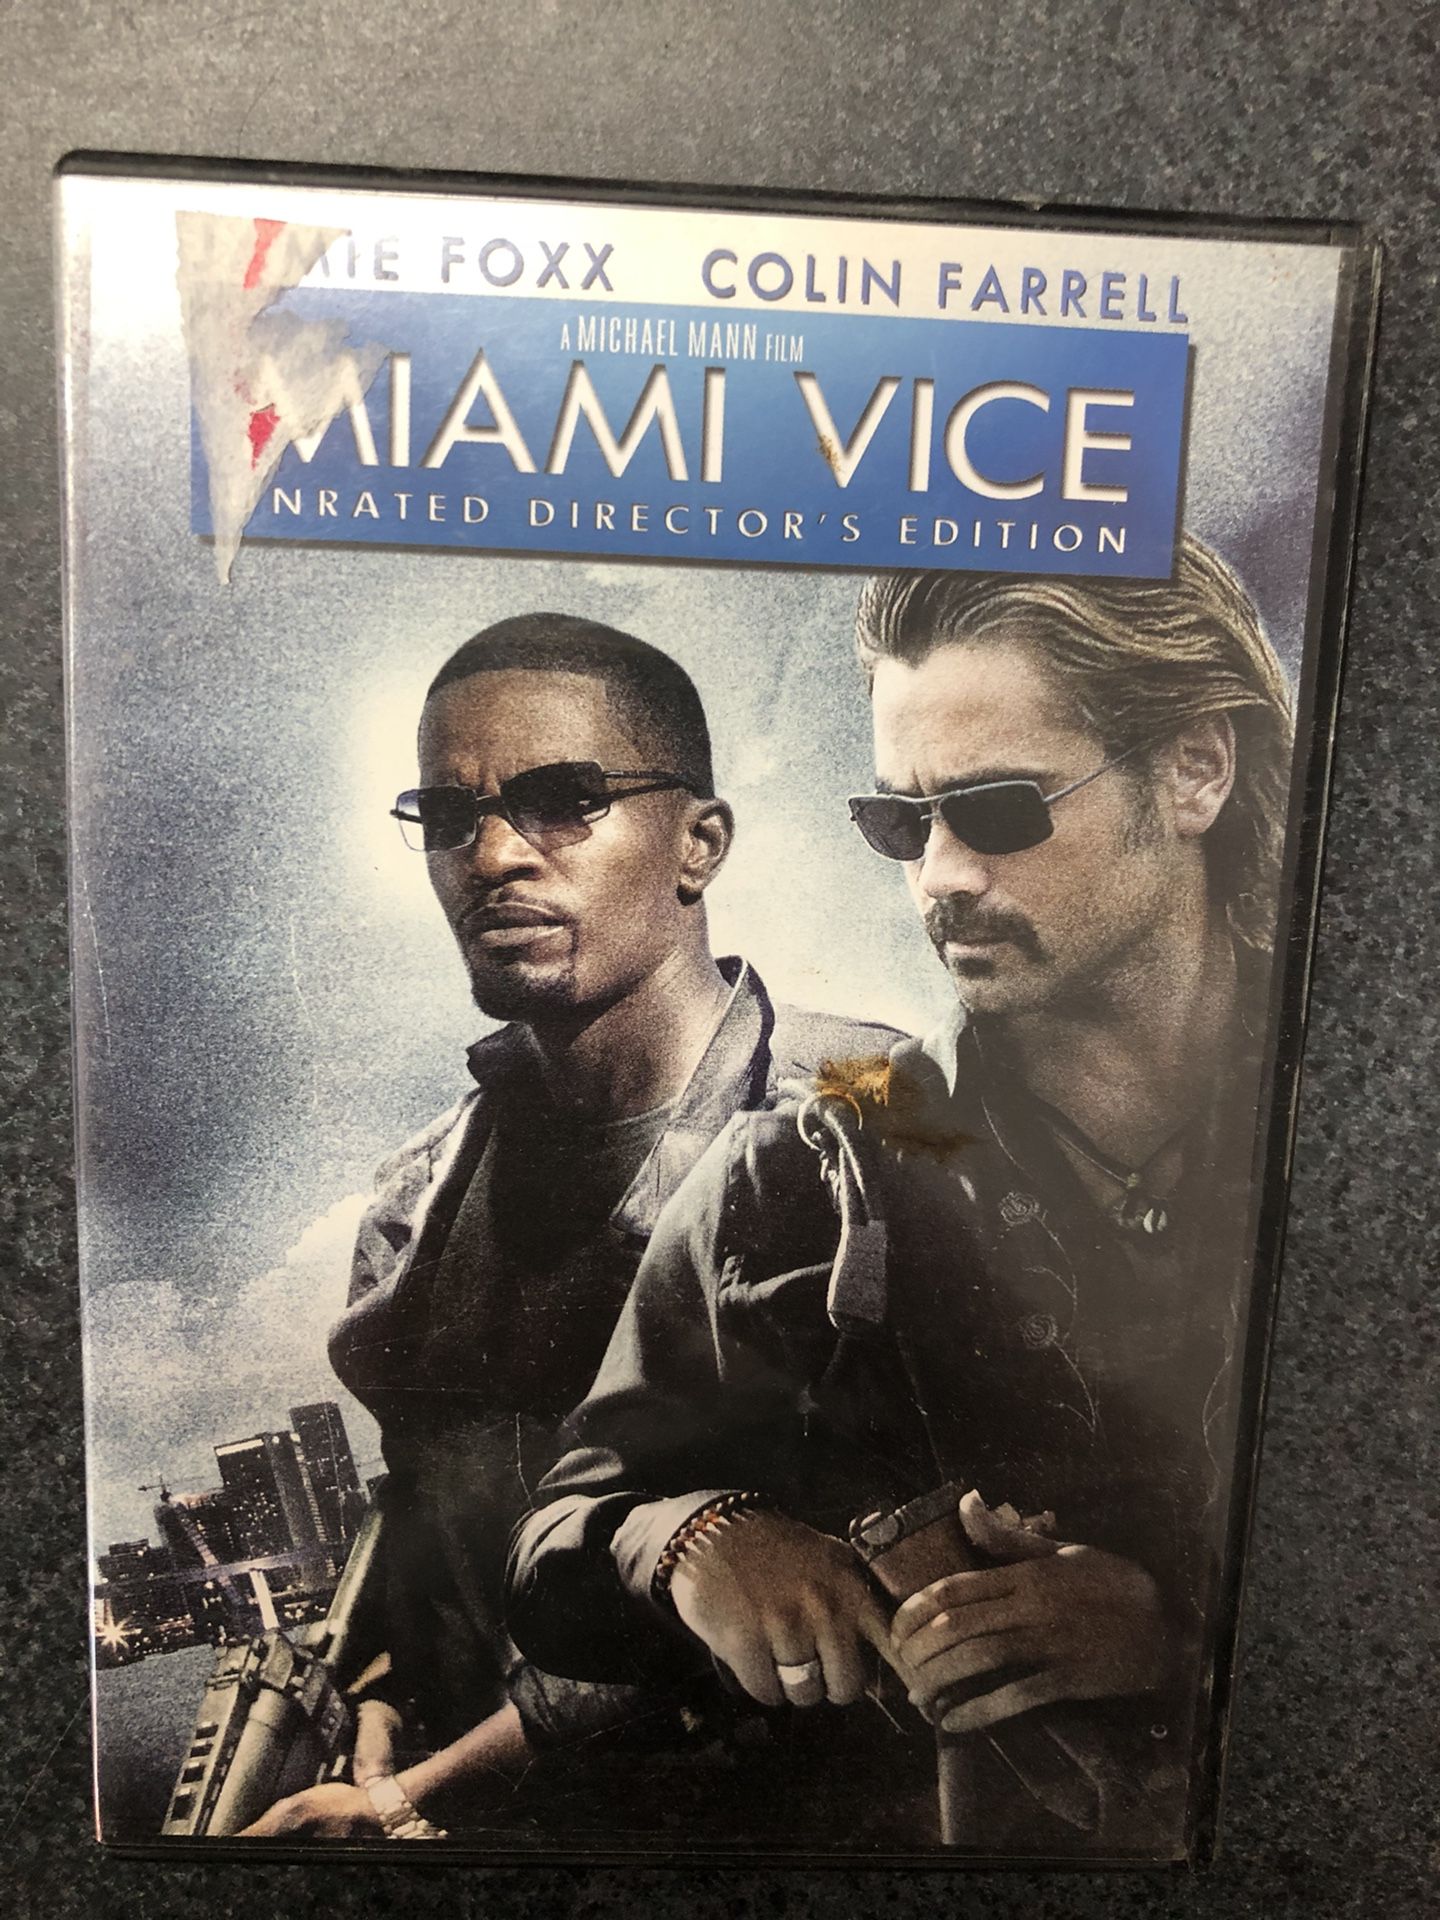 Miami Vice DVD - Jamie Foxx, Colin Farrell